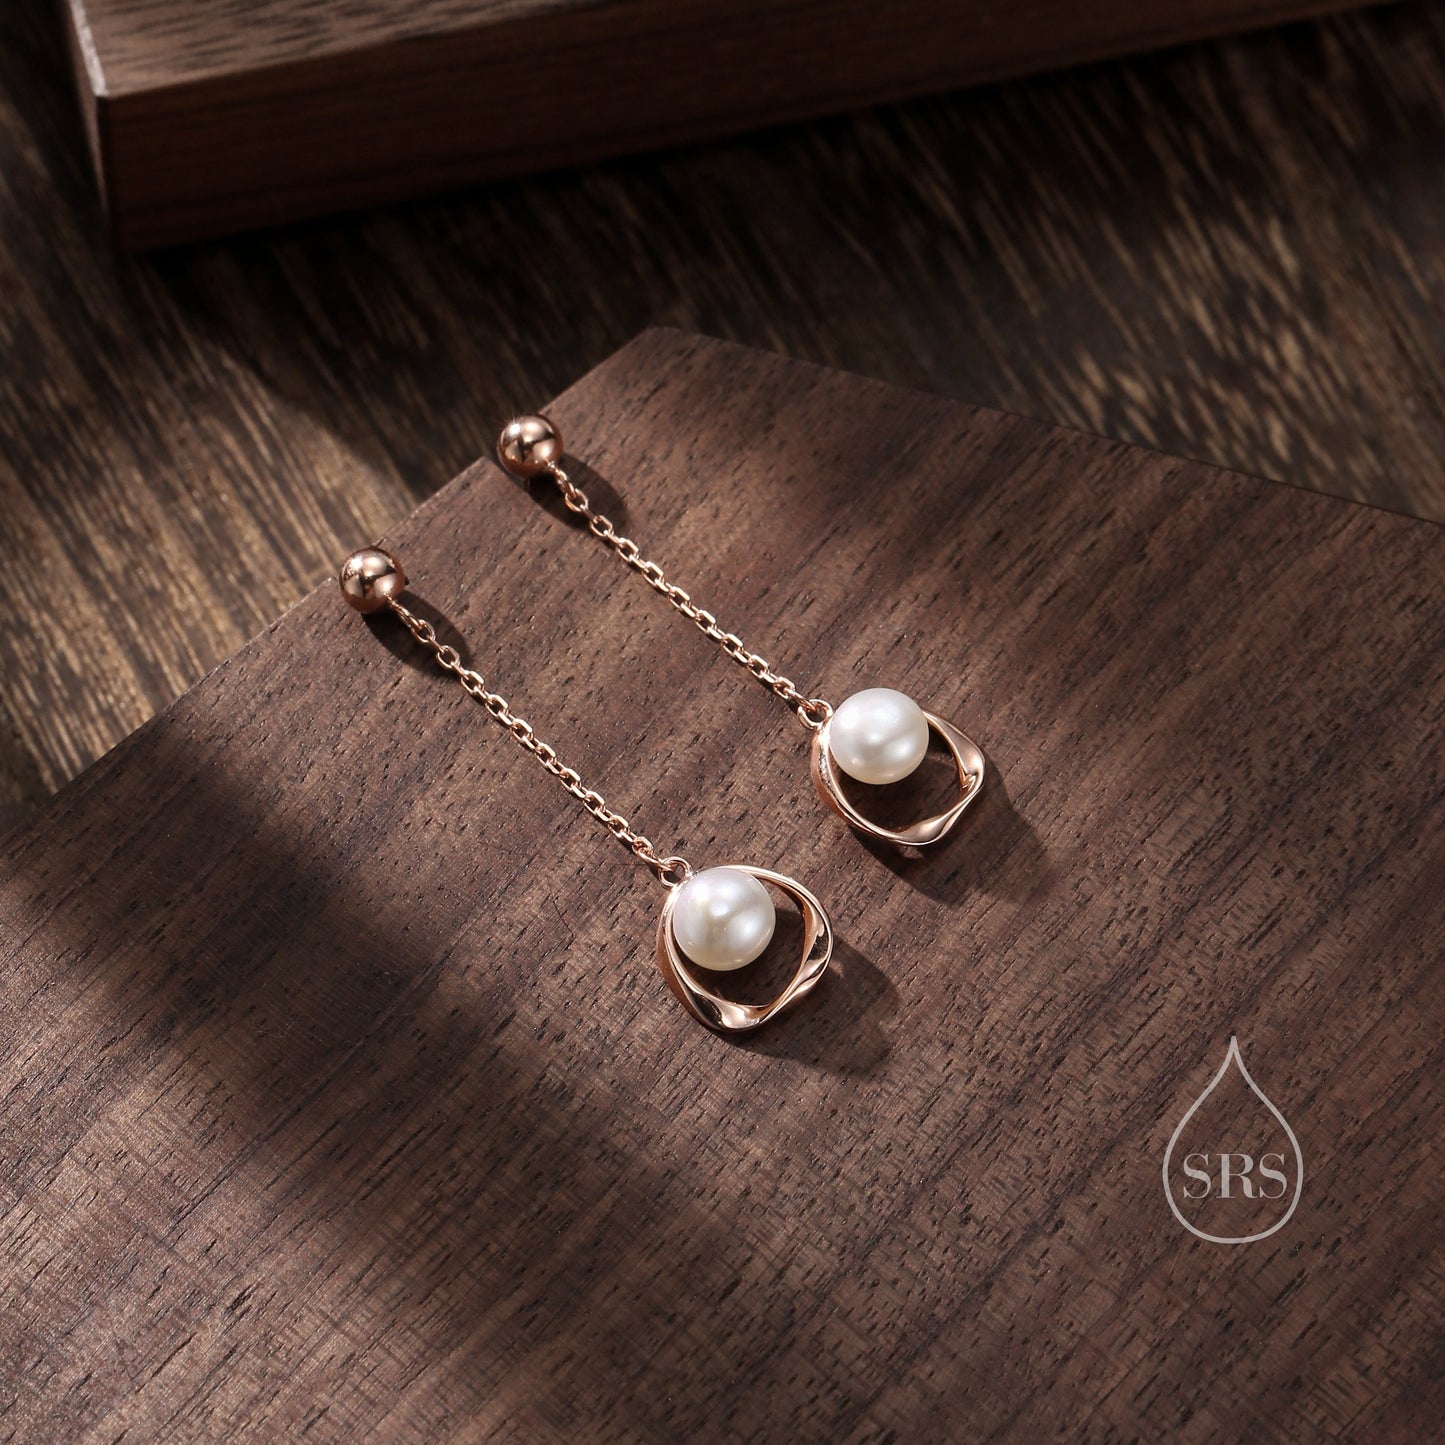 Genuine Freshwater Pearl and Mobius Circle Long Drop Earrings in Sterling Silver, Delicate Keshi Pearl Halo Earrings, Genuine Pearls